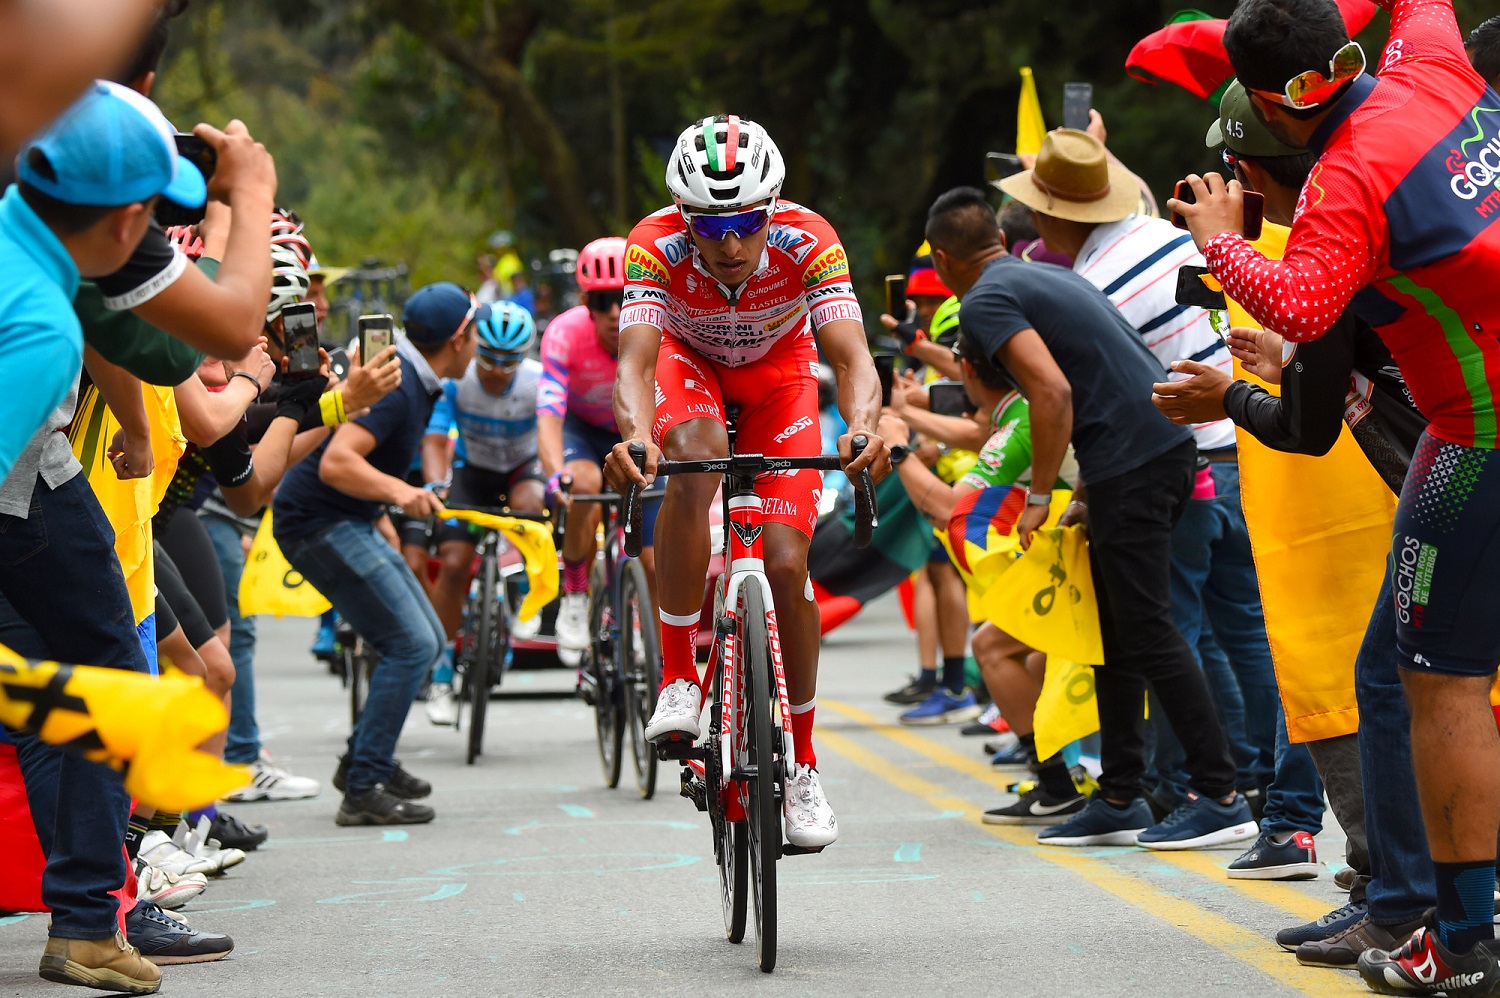 Banzai cerrar Bebé Daniel Muñoz, en duda para el Giro: “Es decepcionante, estaba en muy buena  forma” – Ciclismo Internacional